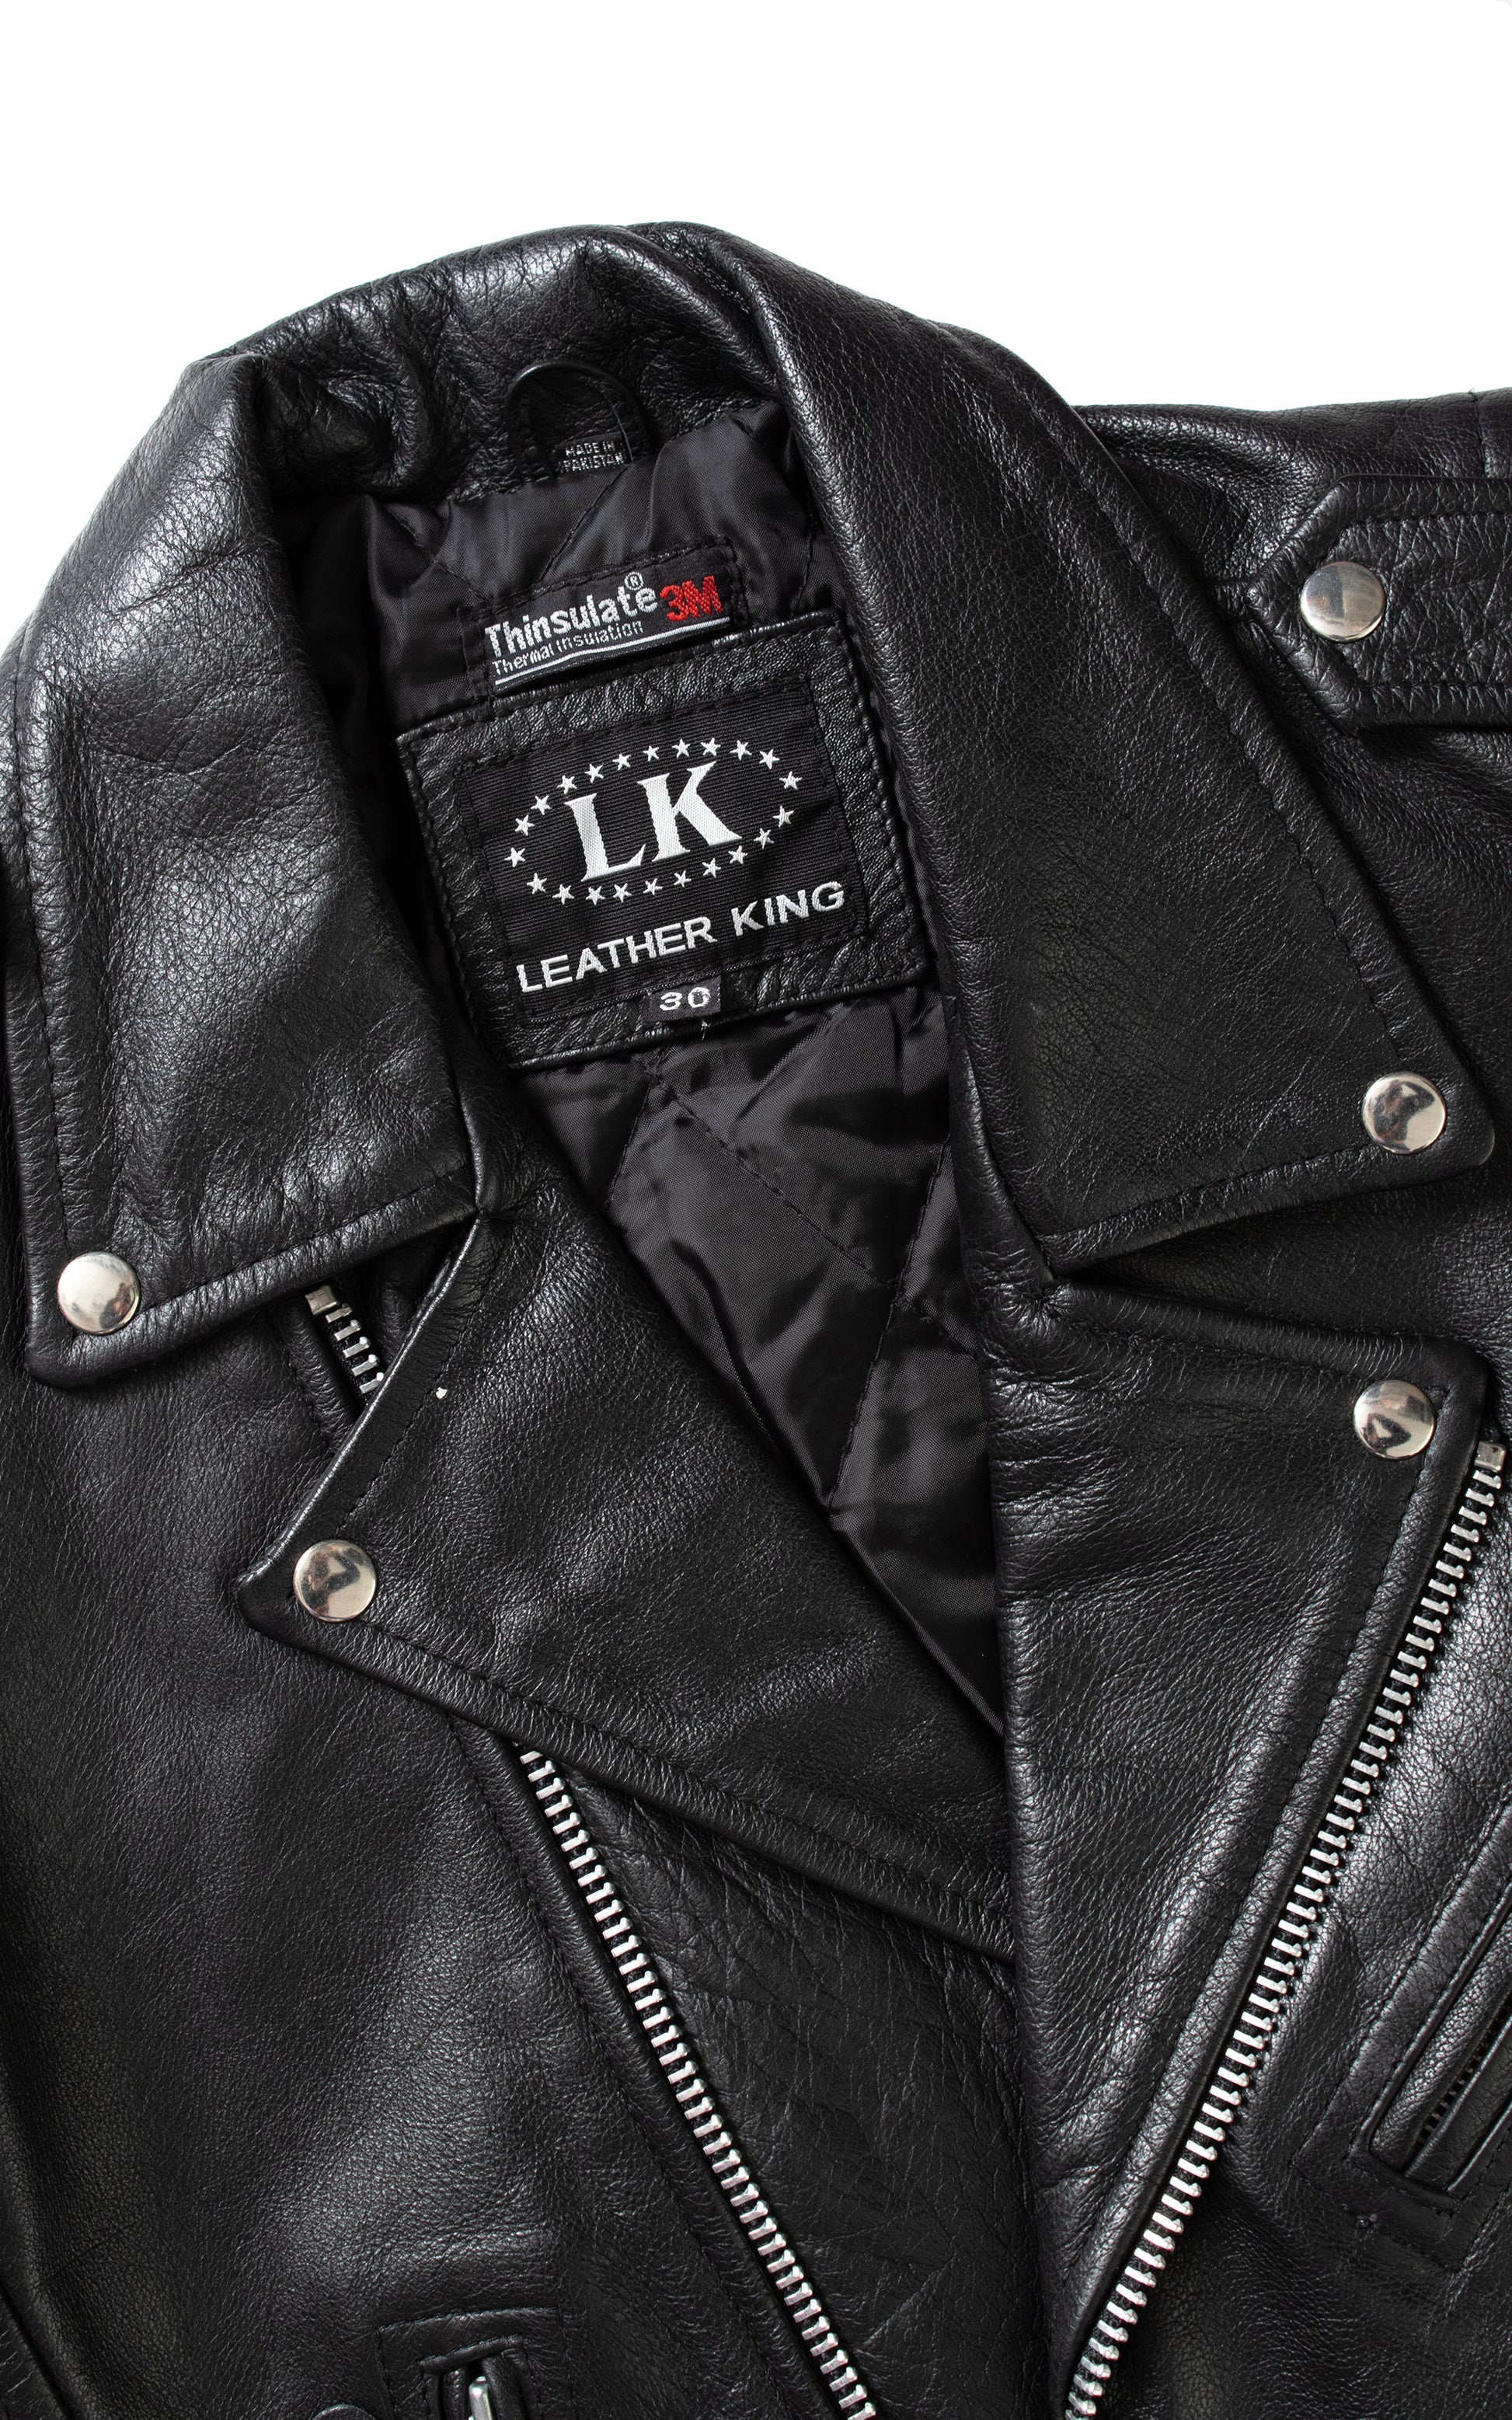 Vintage 80s 1980s Black Leather Moto Jacket BirthdayLifeVintage